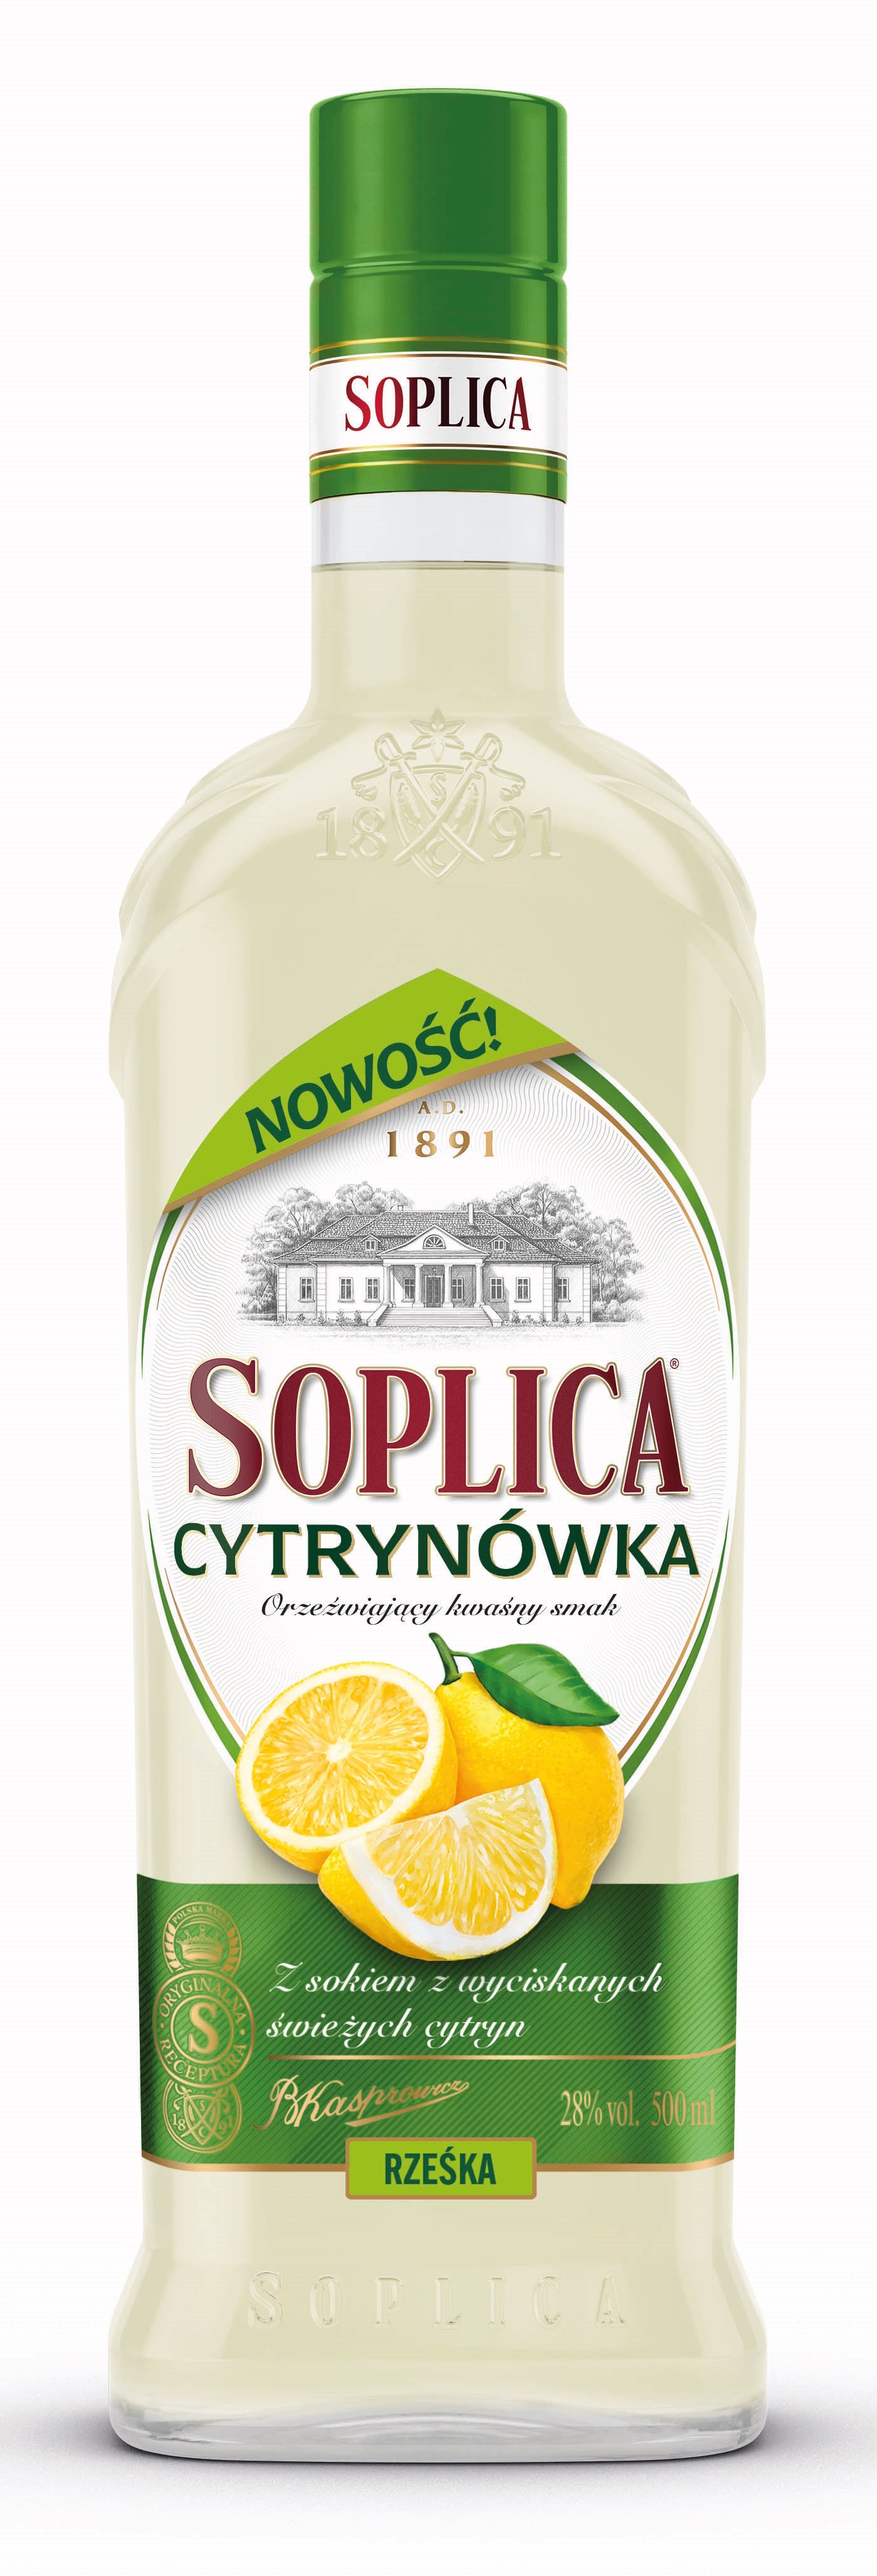 Soplica Zitronen Likör cytrynowka 28% - 500ml